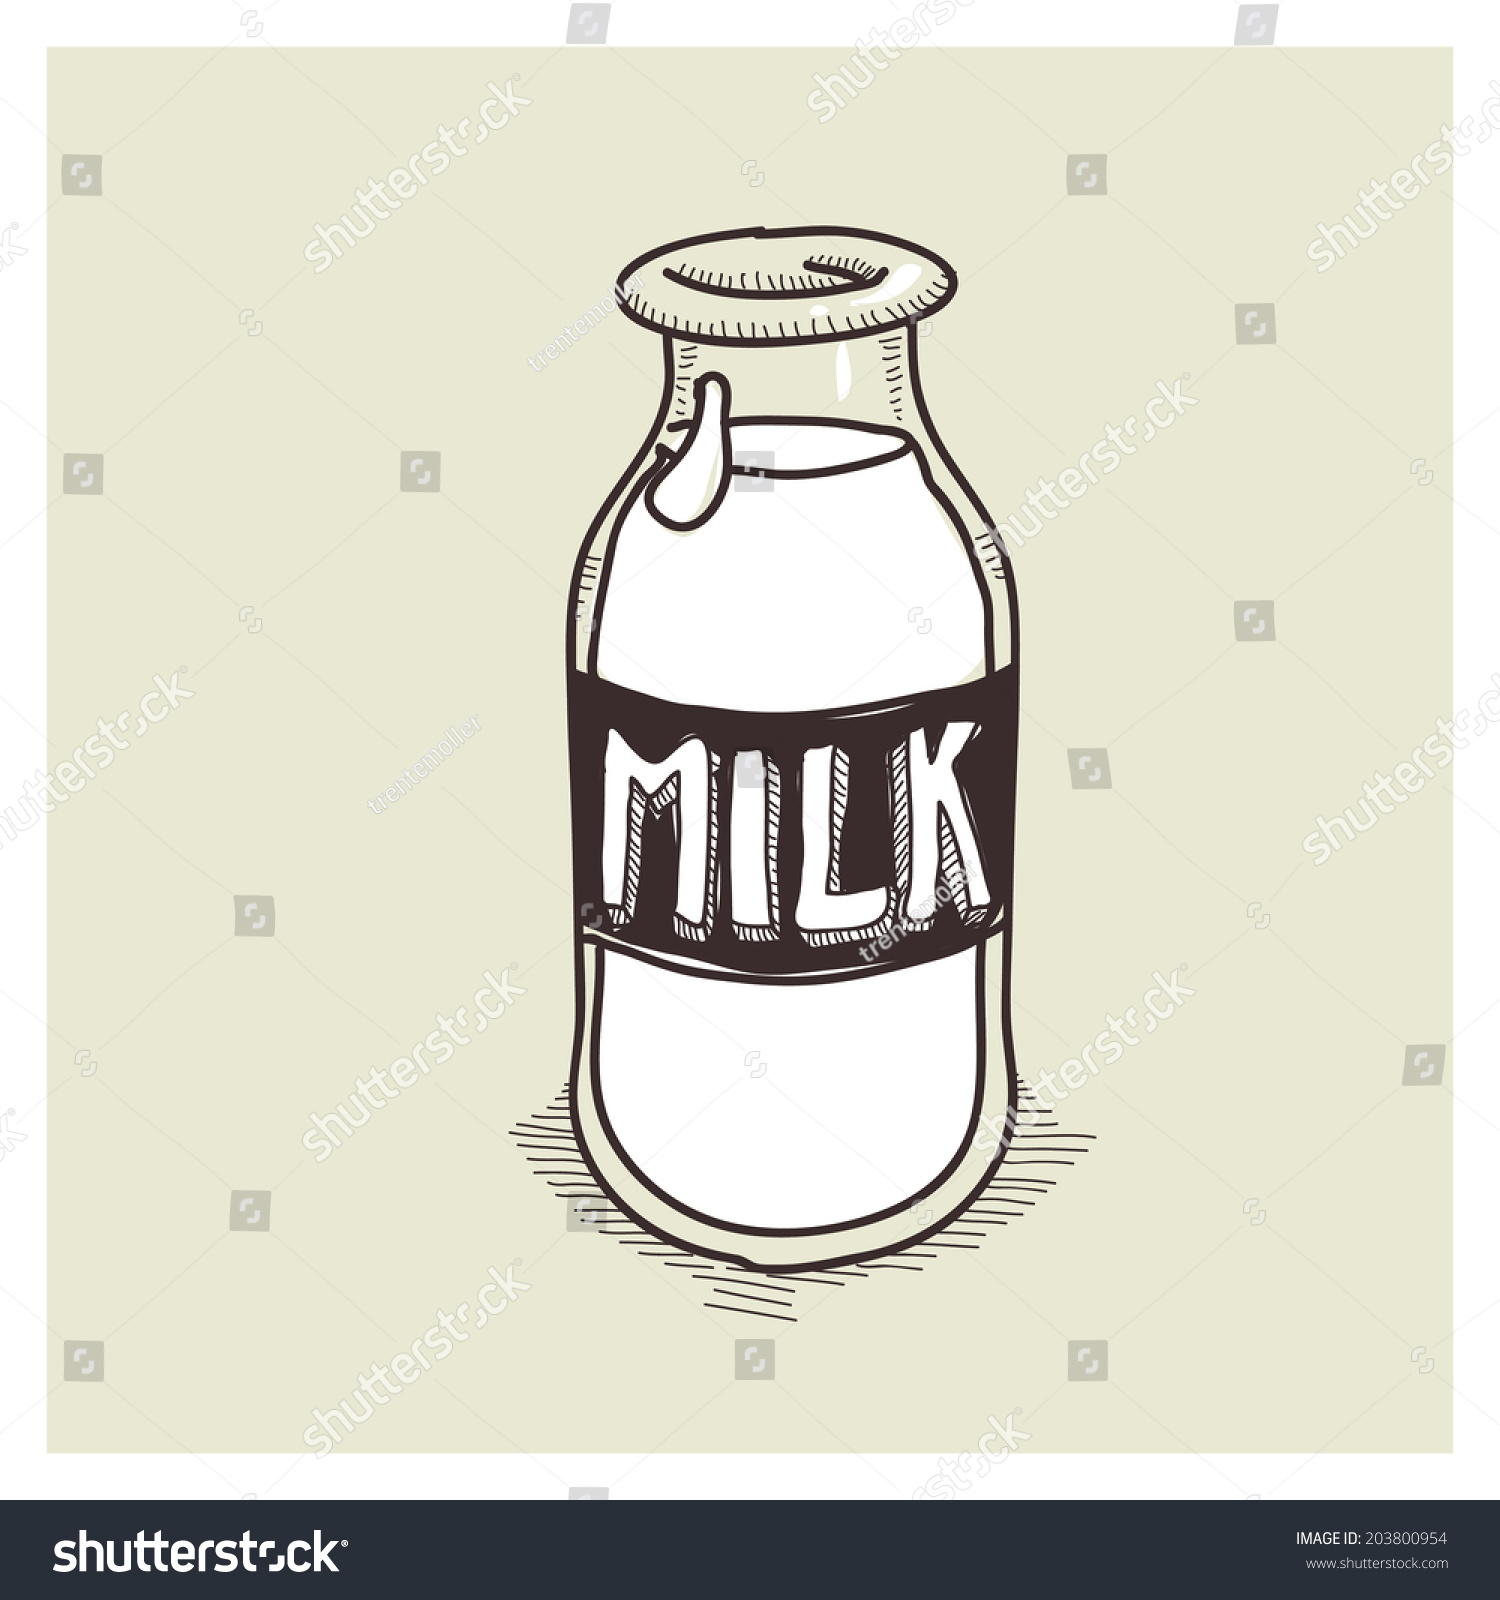 Vector Sketch Milk Bottle - 203800954 : Shutterstock